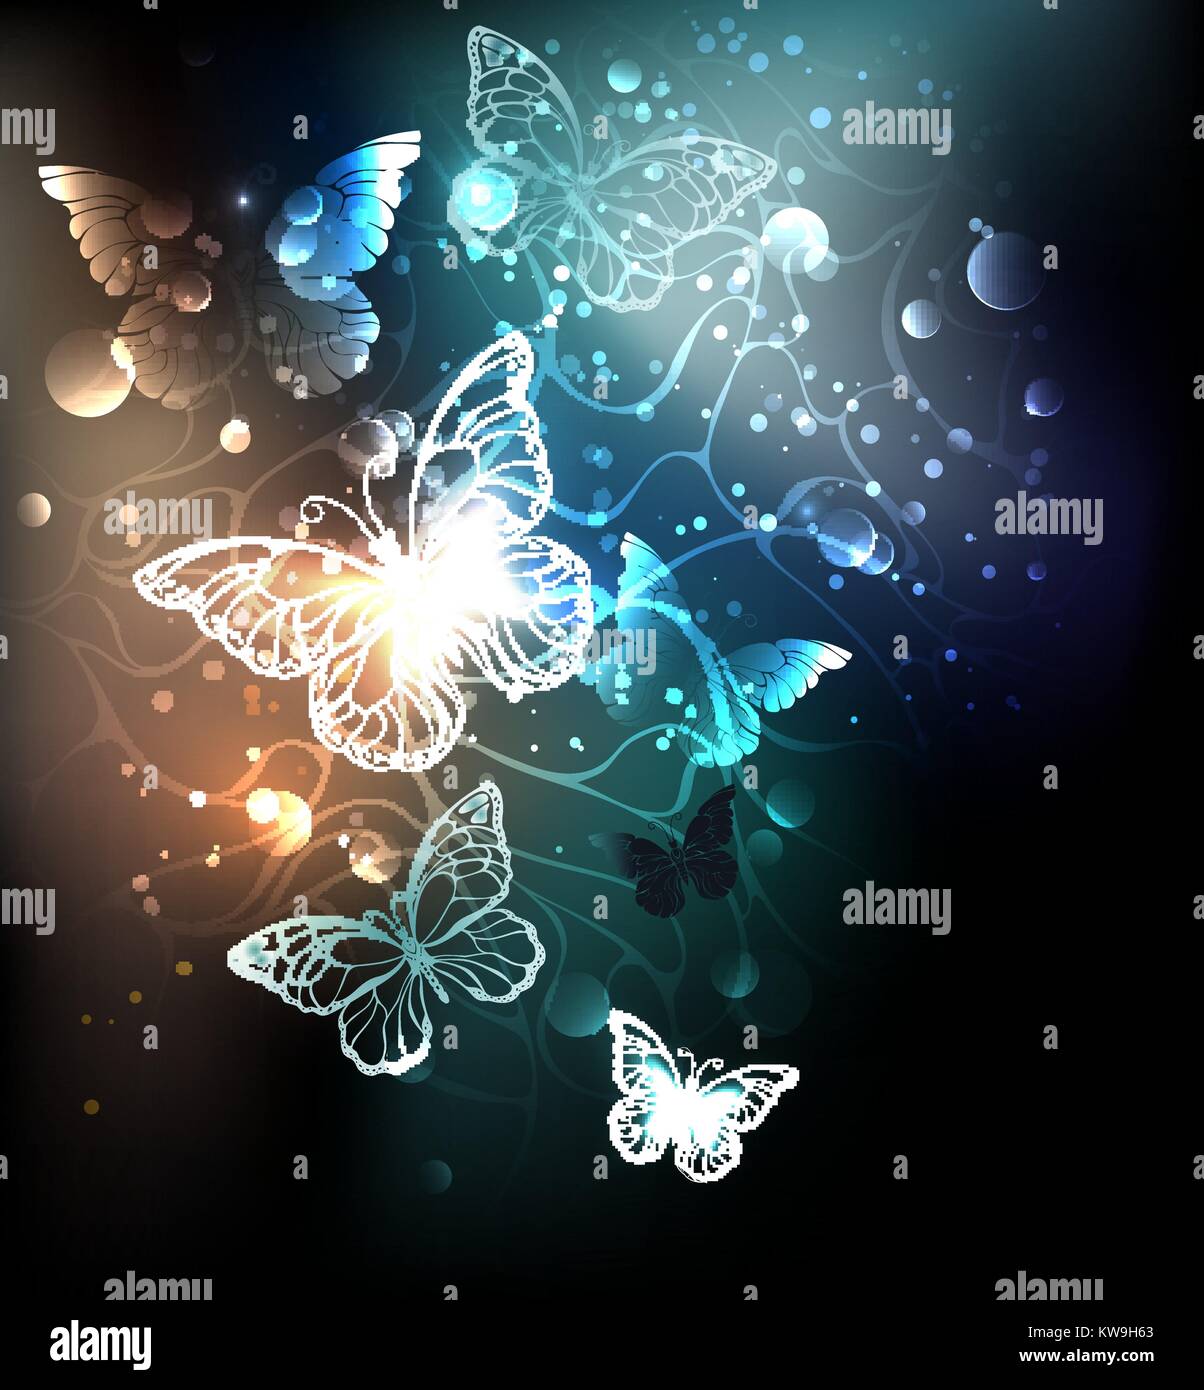 Nuit glowing butterflies sur un fond lumineux. Les papillons de nuit. Conception avec les papillons. Illustration de Vecteur